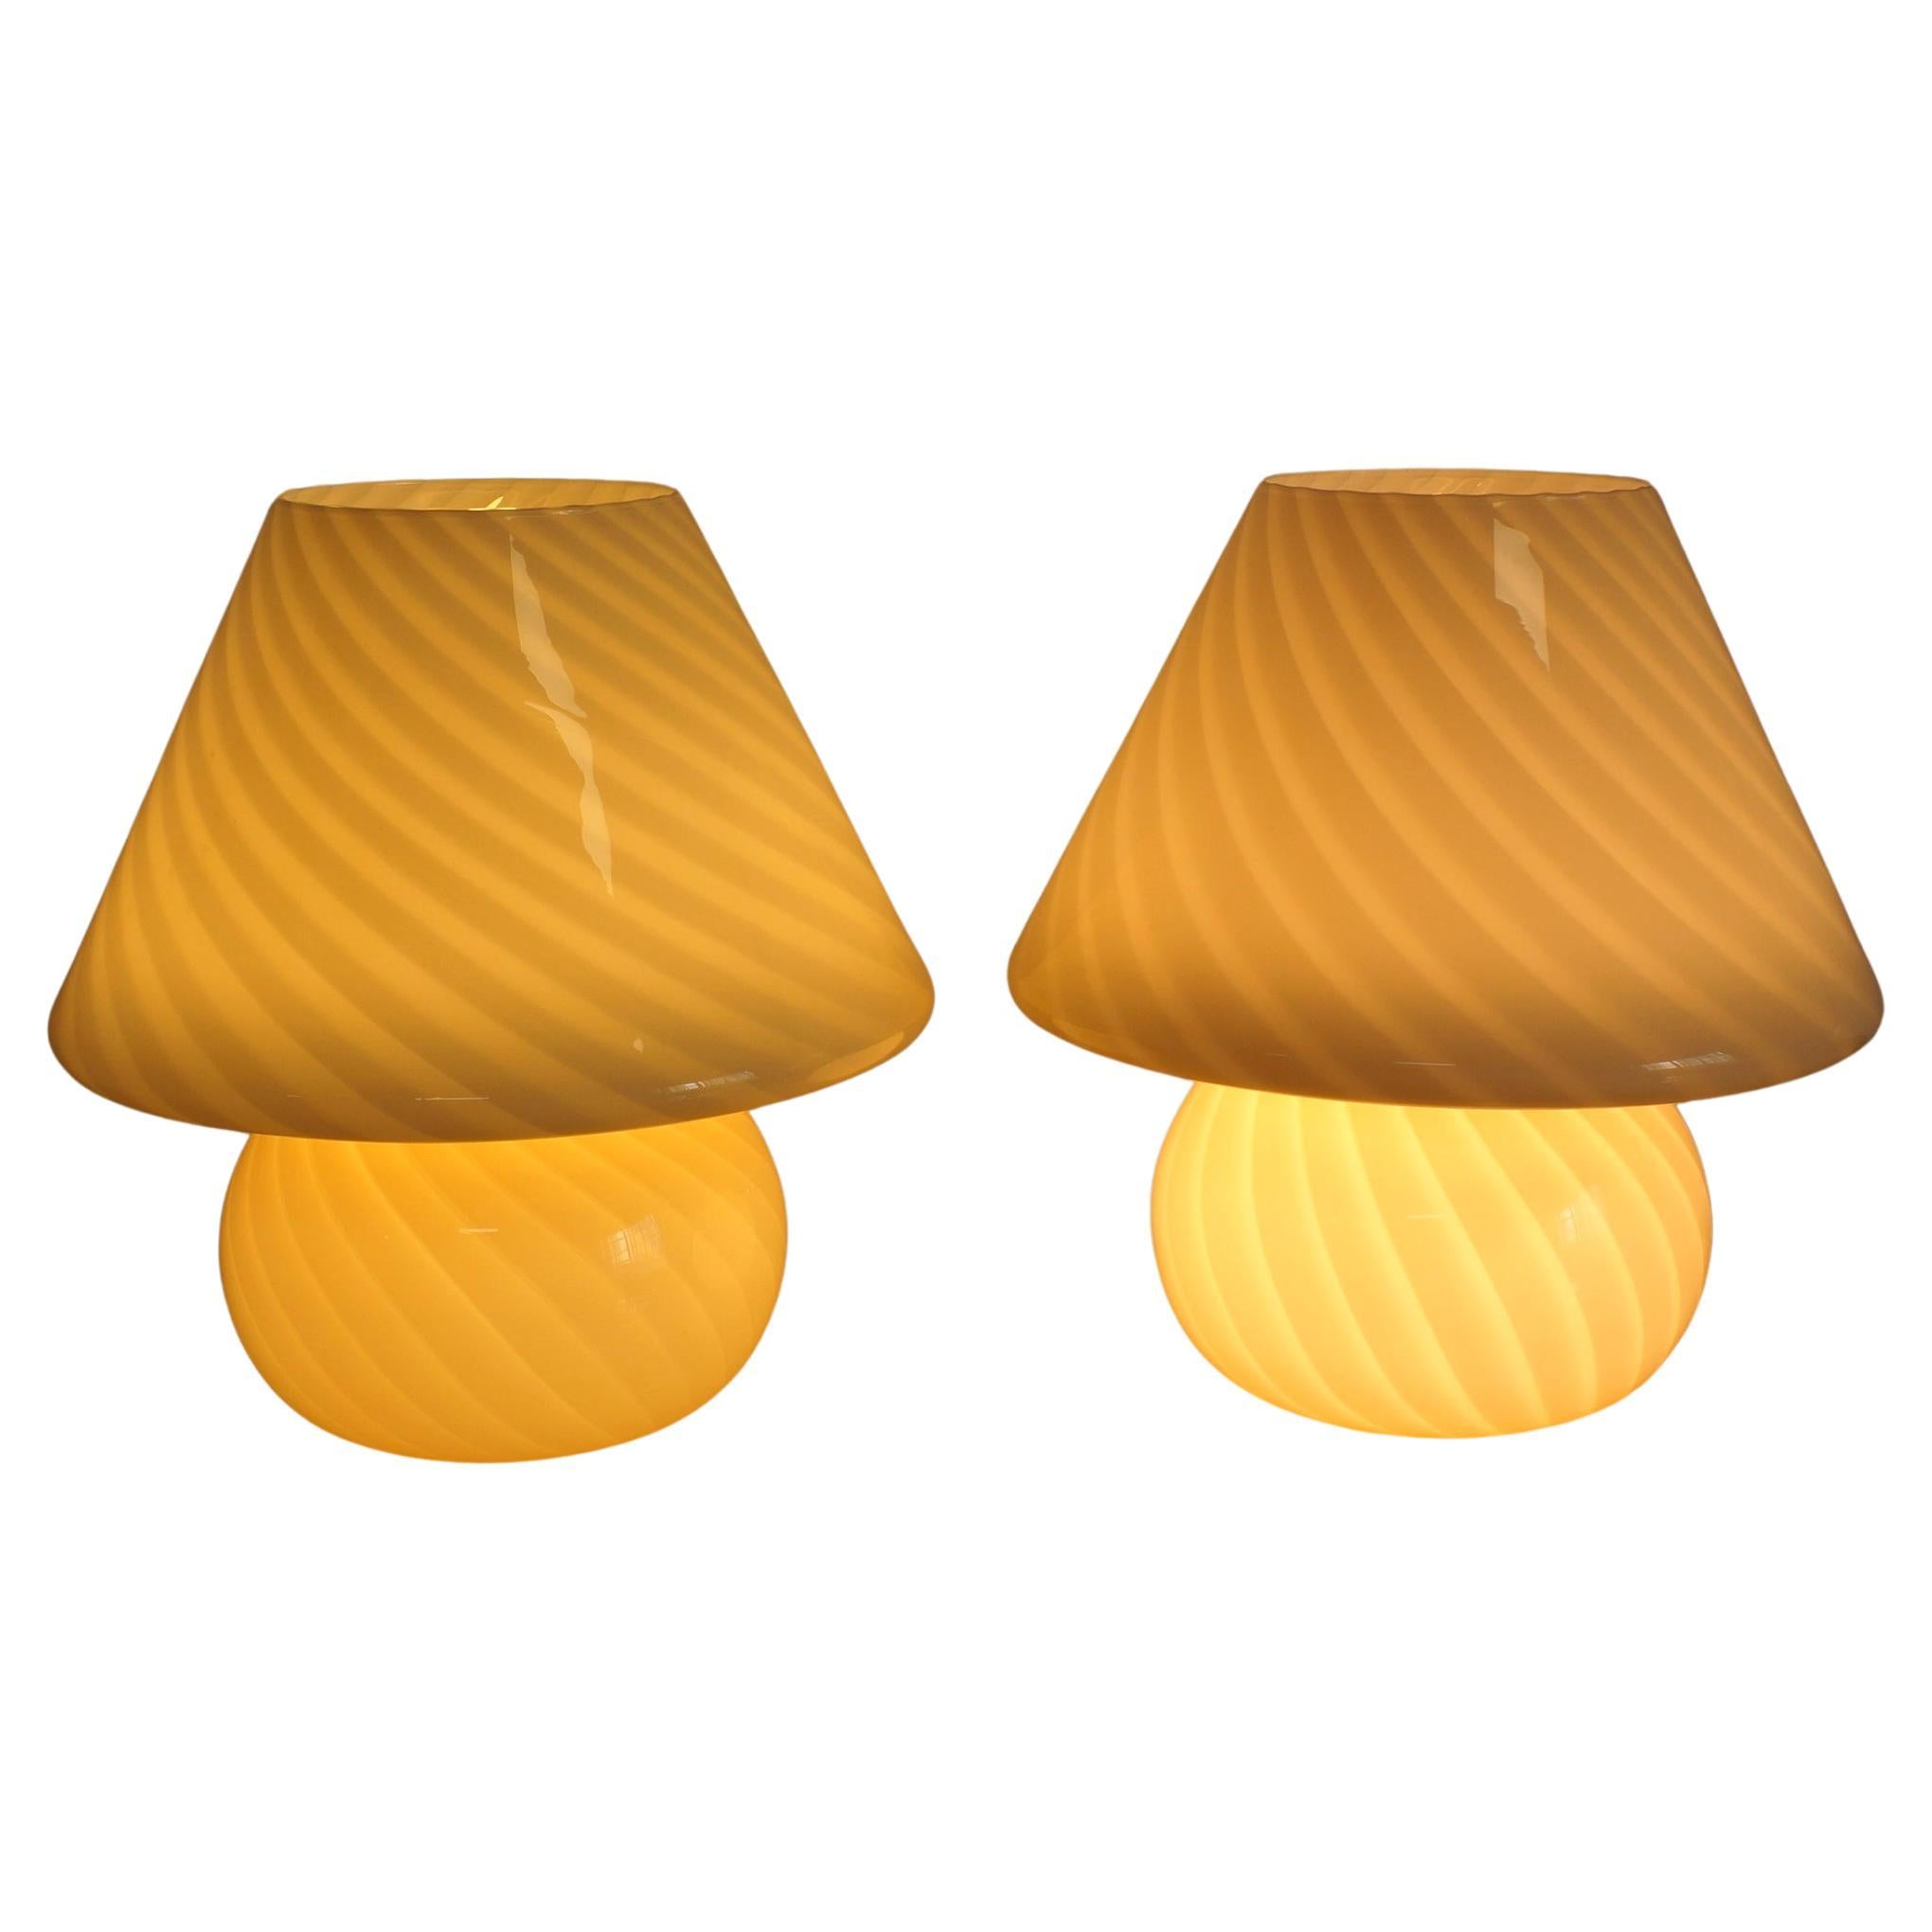 Paire de lampes champignons extra-larges de Murano, de couleur crème, réalisées selon la technique du tourbillon. Le verre d'art de Murano est considéré comme l'un des verres d'art les plus travaillés au monde et il est fabriqué avec un niveau de